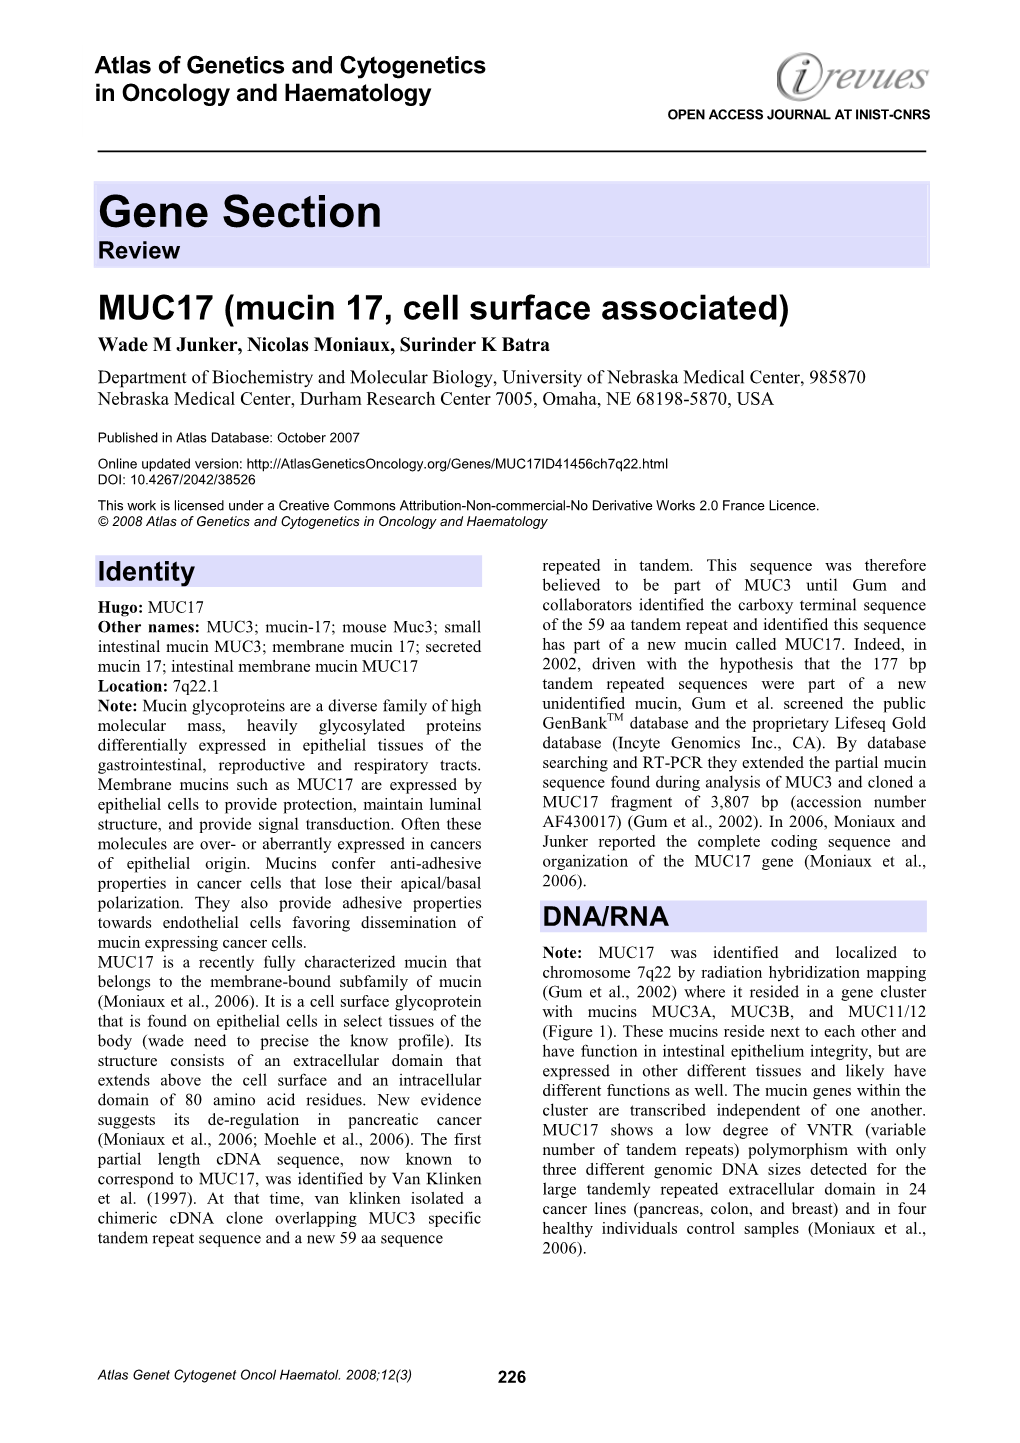 MUC17 (Mucin 17, Cell Surface Associated)